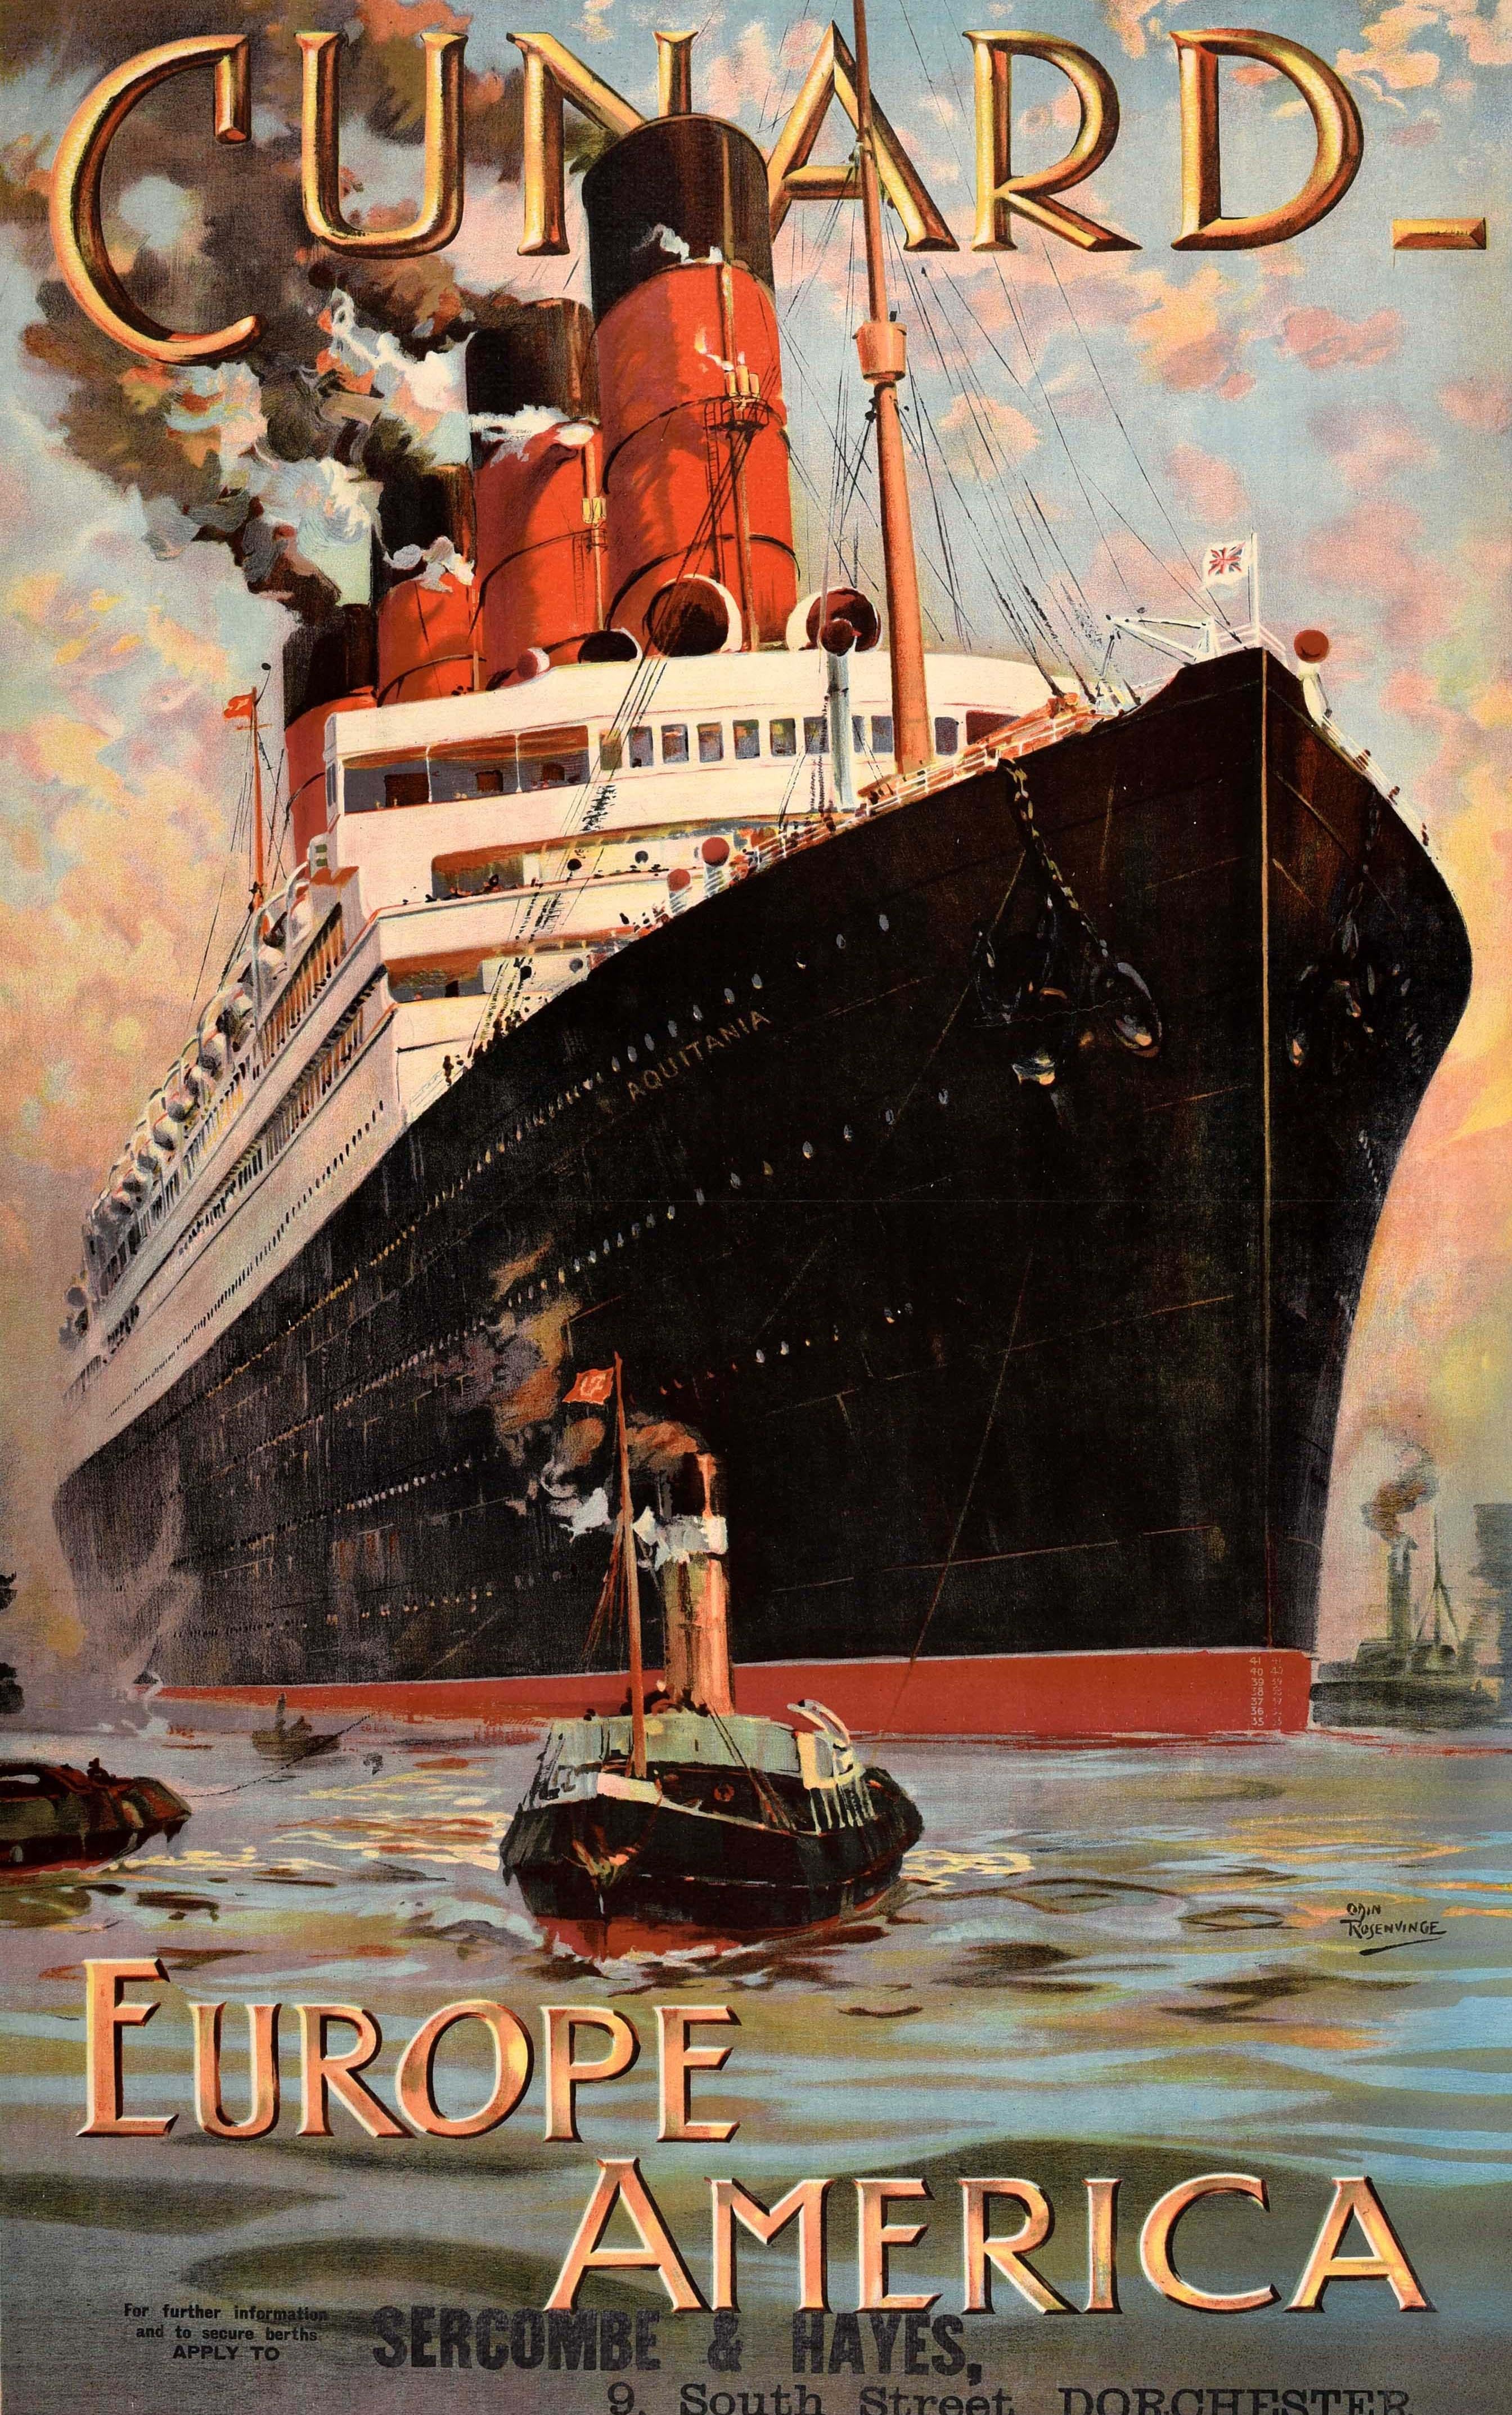 Affiche originale ancienne de la Cunard pour son itinéraire de croisière transatlantique Europe-Amérique, comportant une superbe illustration d'Odin Rosenvinge (1880-1957) représentant le paquebot à quatre tunnels RMS Aquitania (1914-1950) naviguant